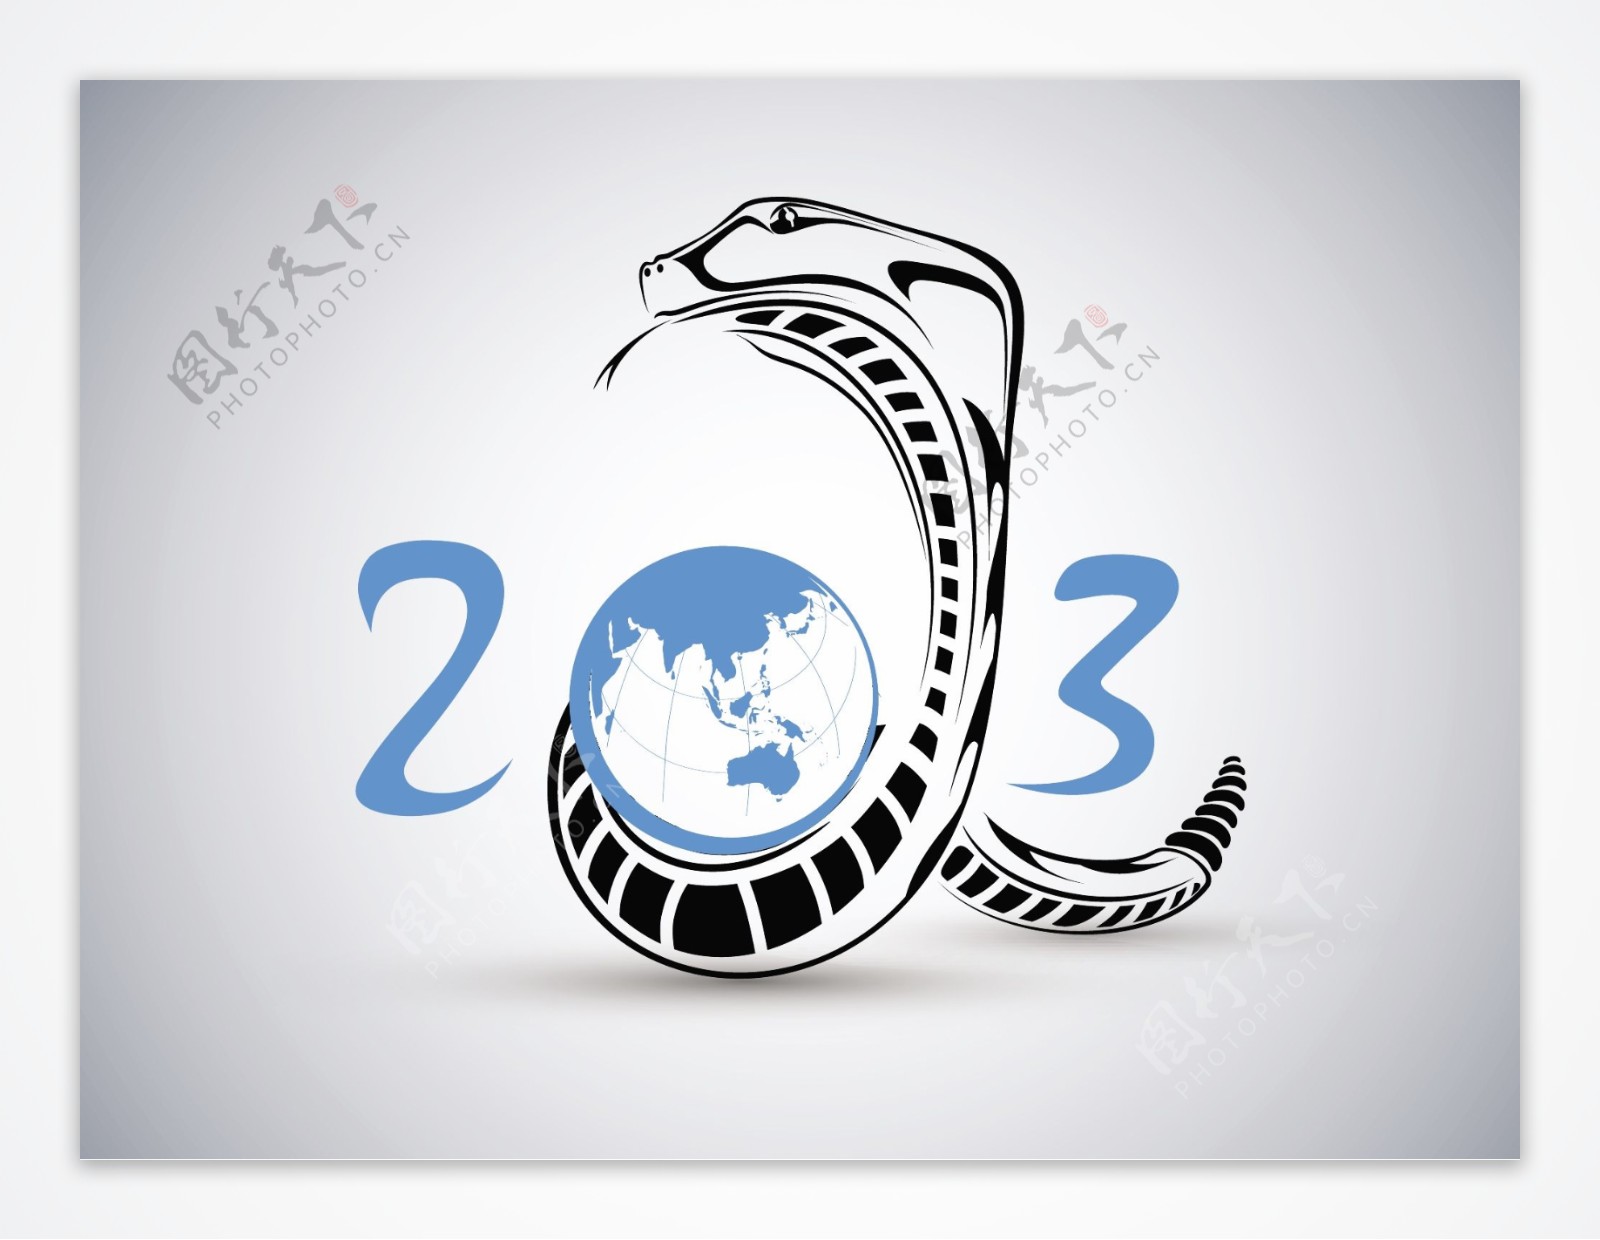 2013新年快乐与蛇的设计